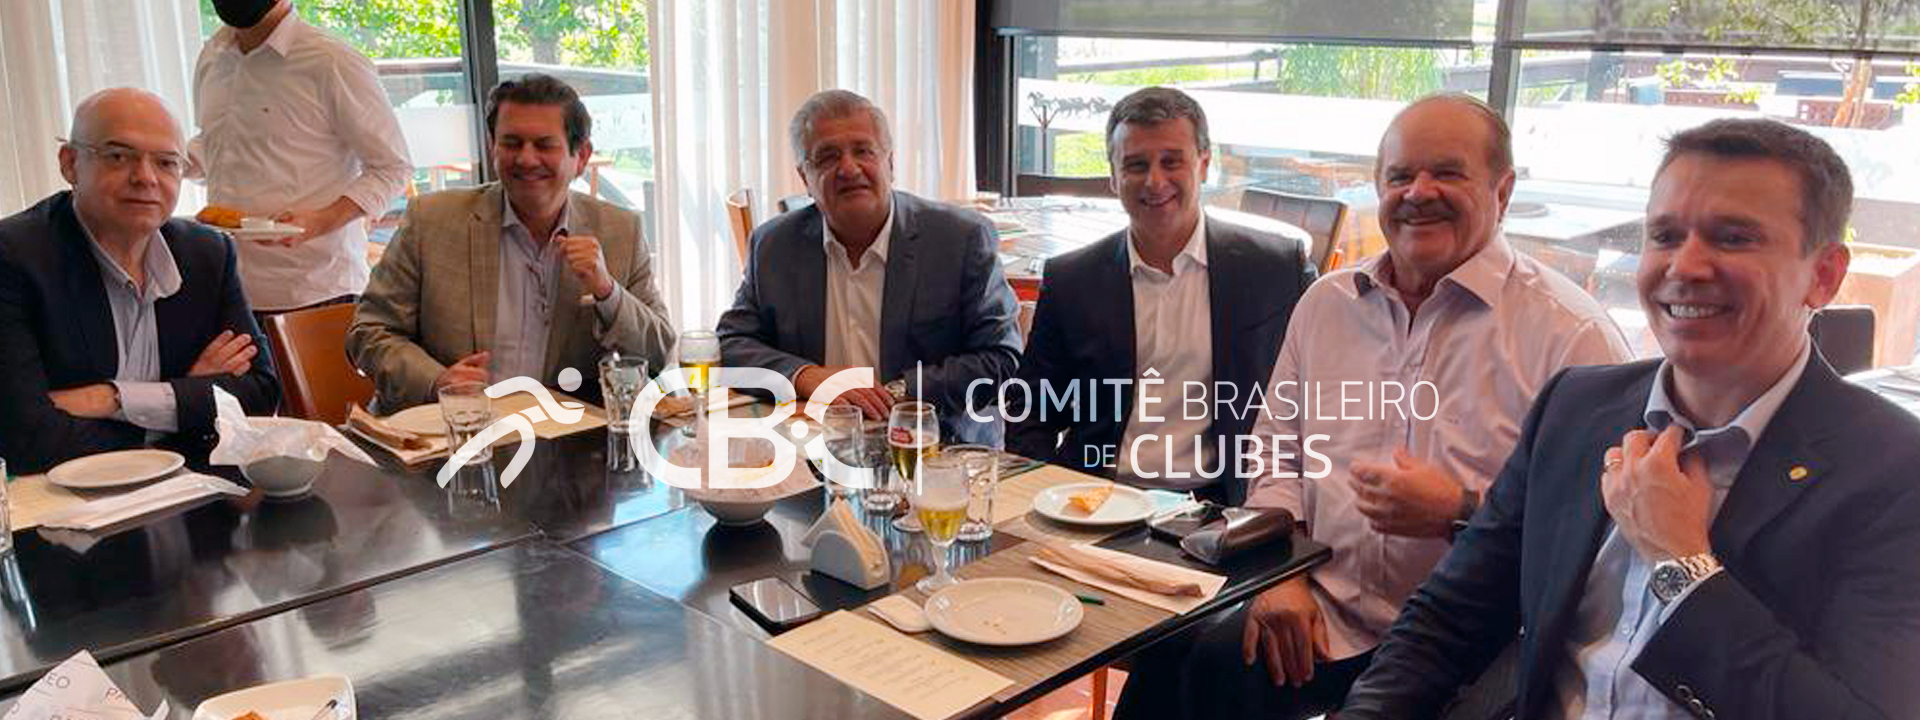 Paulo Maciel, Presidente do CBC, é convidado para almoço no Jockey Club do Rio de Janeiro, com Deputados e Presidentes de Clubes